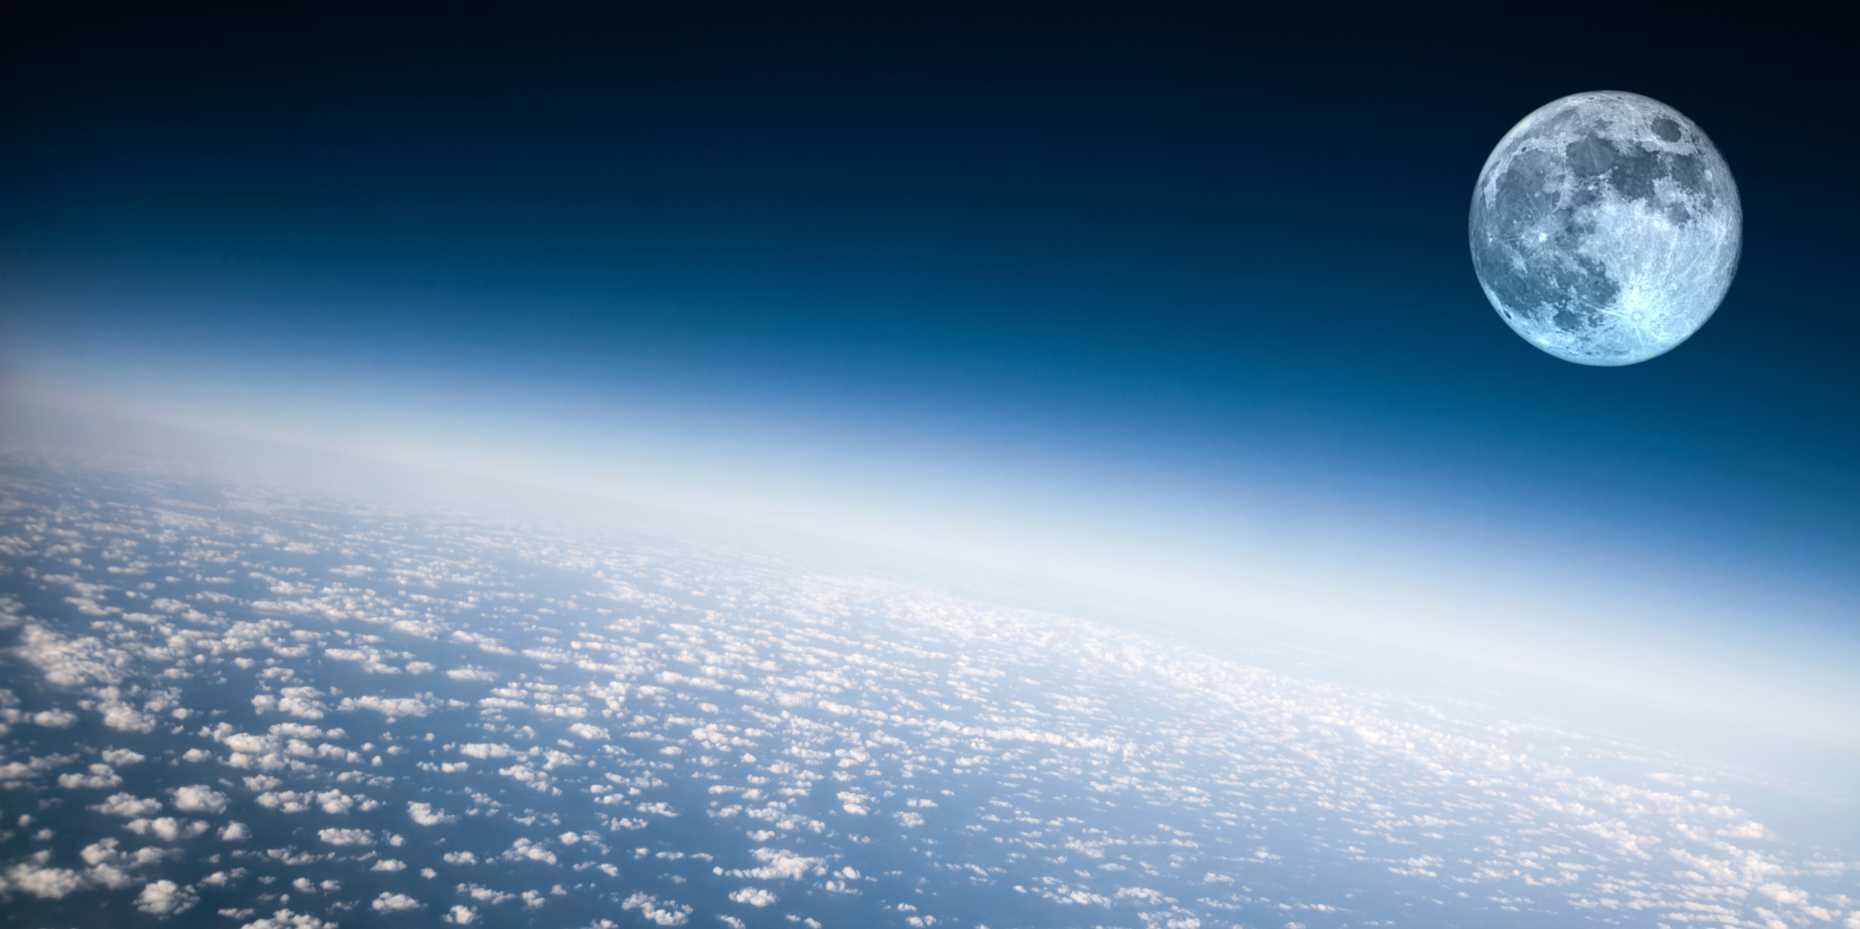 Enlarged view: Ozonschicht